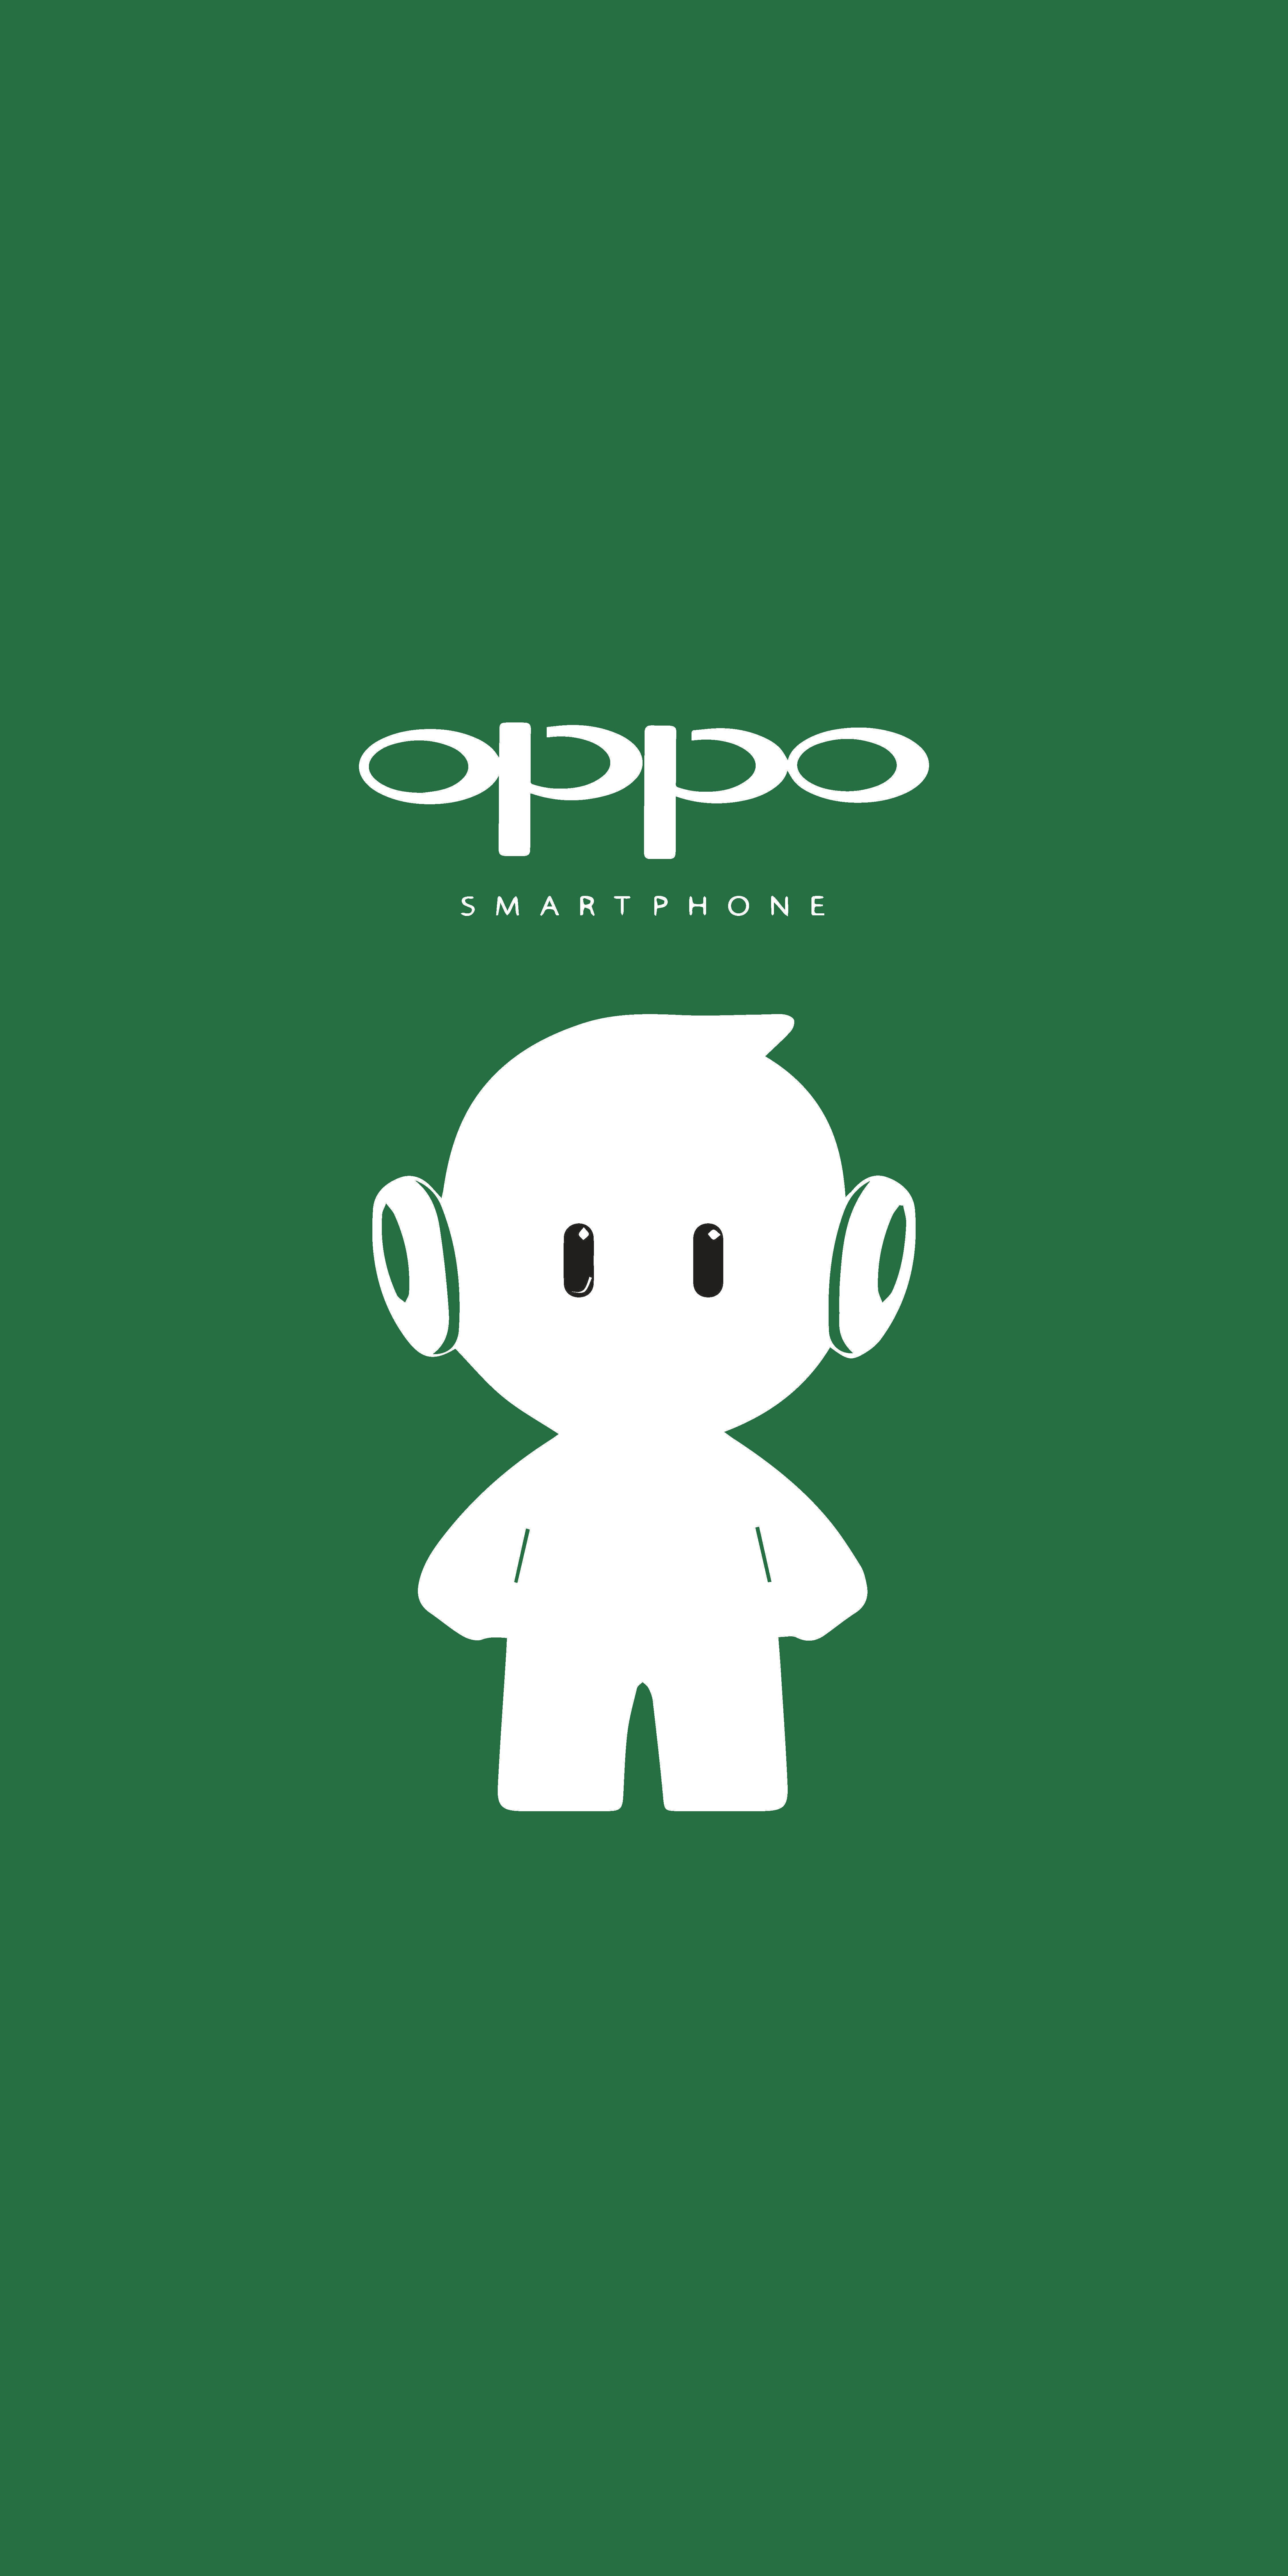 Oppo Logo Wallpapers - Top Những Hình Ảnh Đẹp